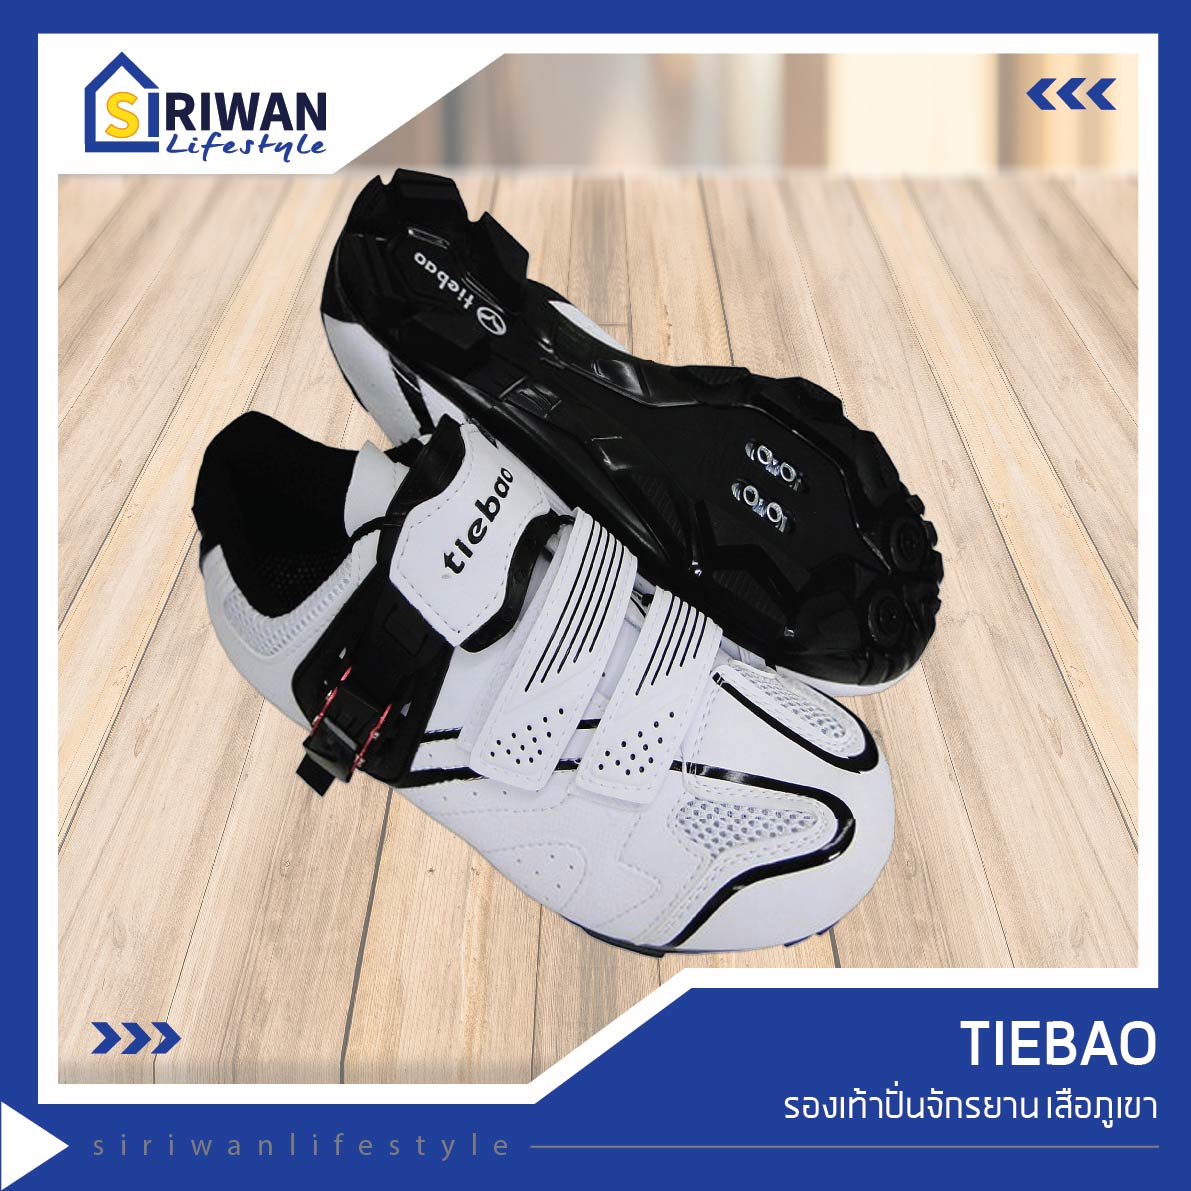 Tiebao รองเท้าปั่นจักรยาน เสือภูเขา สีขาว/ดำ รุ่นTB15-B1413